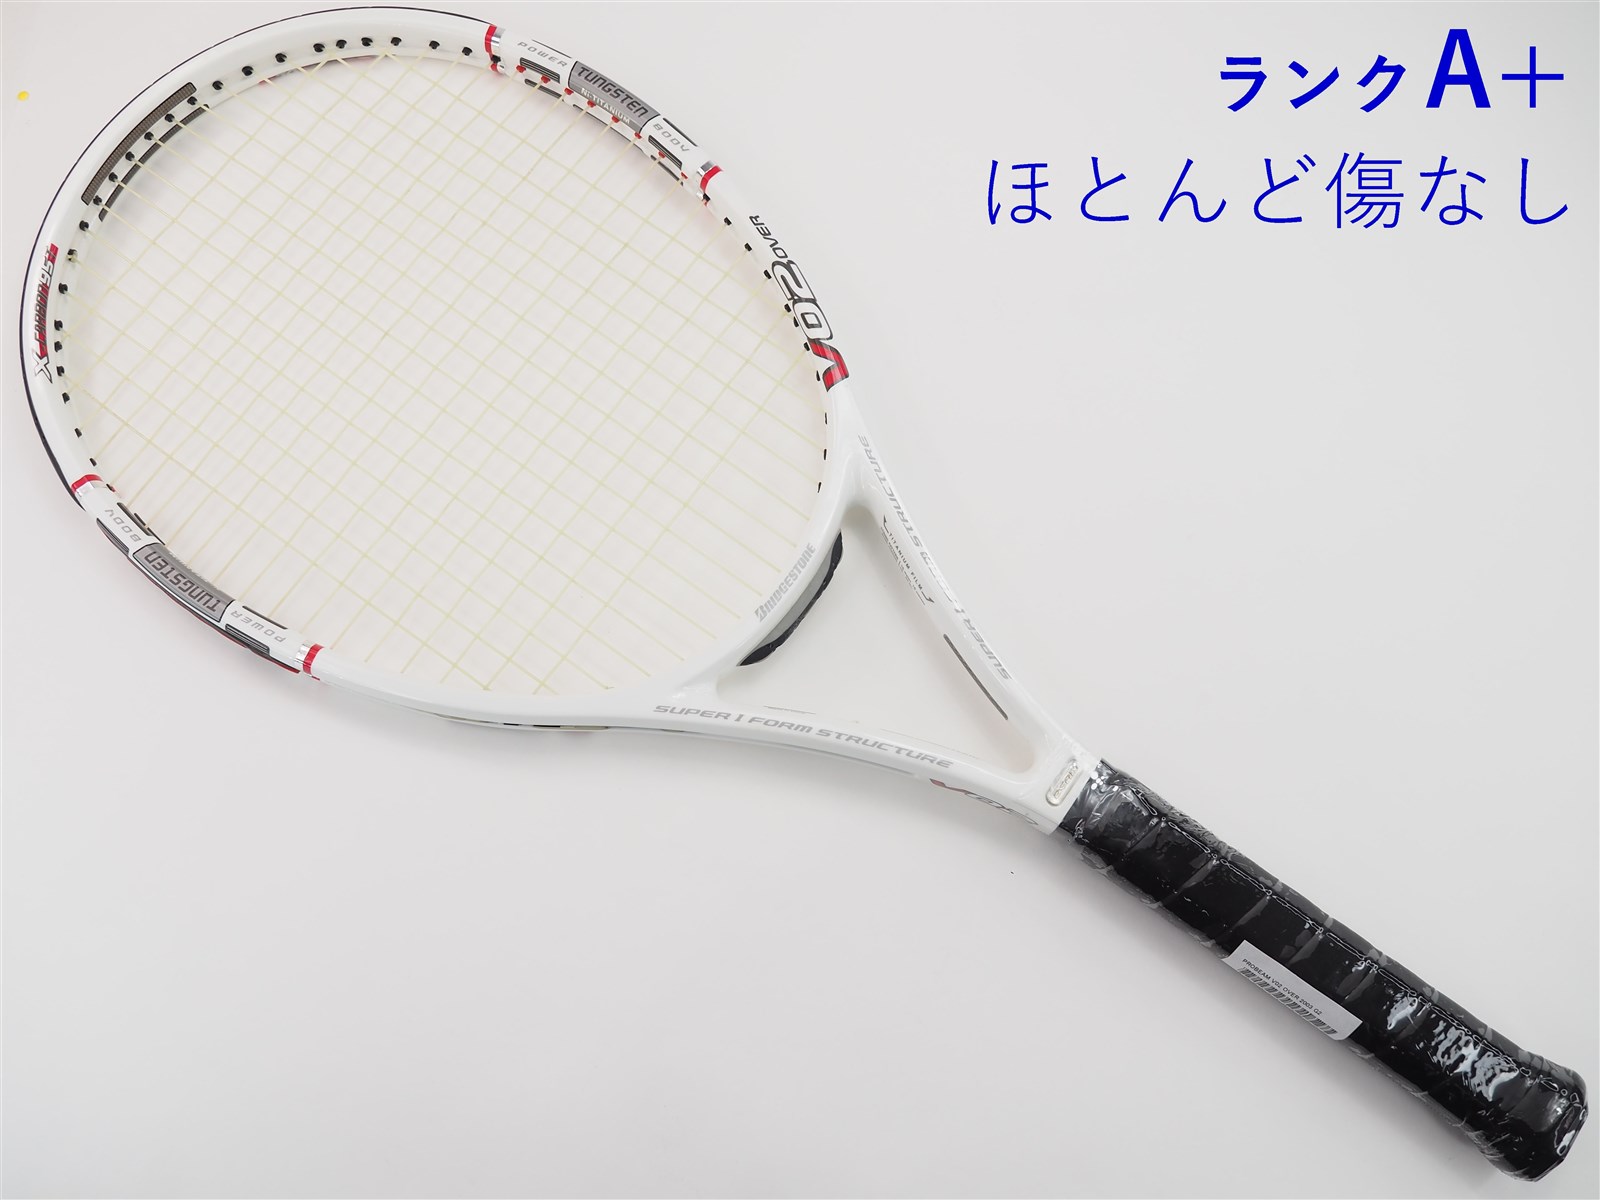 テニスラケット ブリヂストン プロビーム V-WR 2.65 2005年モデル (G1)BRIDGESTONE PROBEAM V-WR 2.65 2005